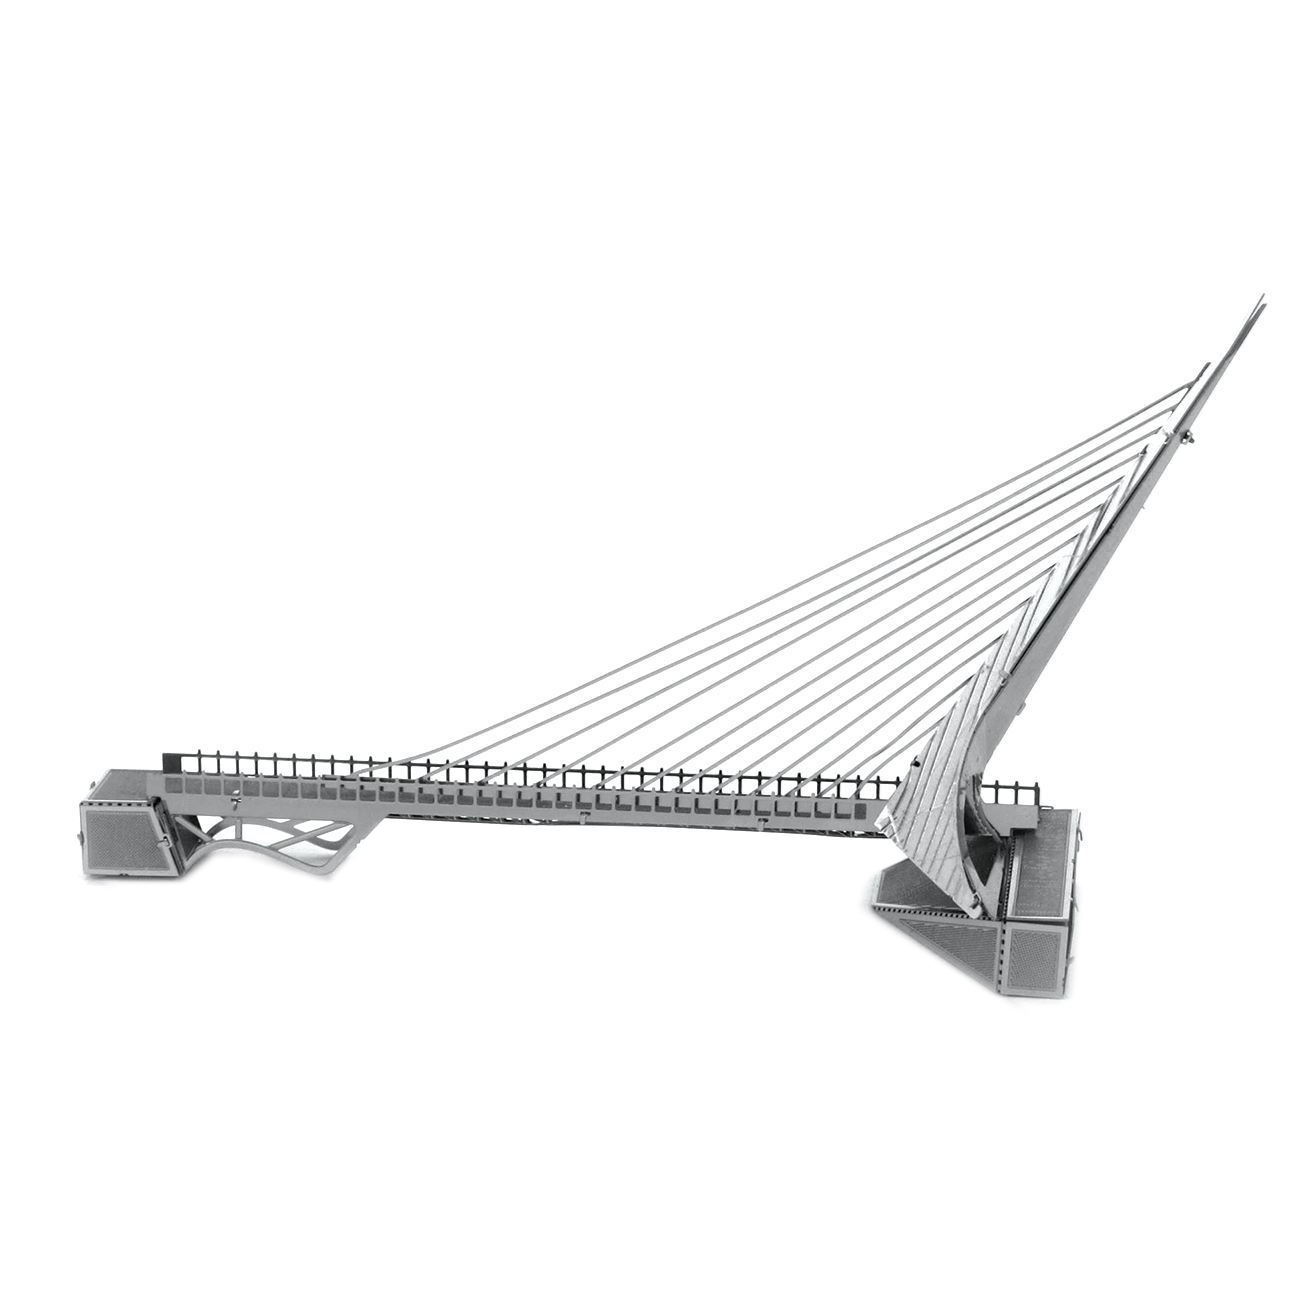 نقد و بررسی پازل فلزی سه بعدی - مدل BMK SUNDIAL BRIDGE توسط خریداران